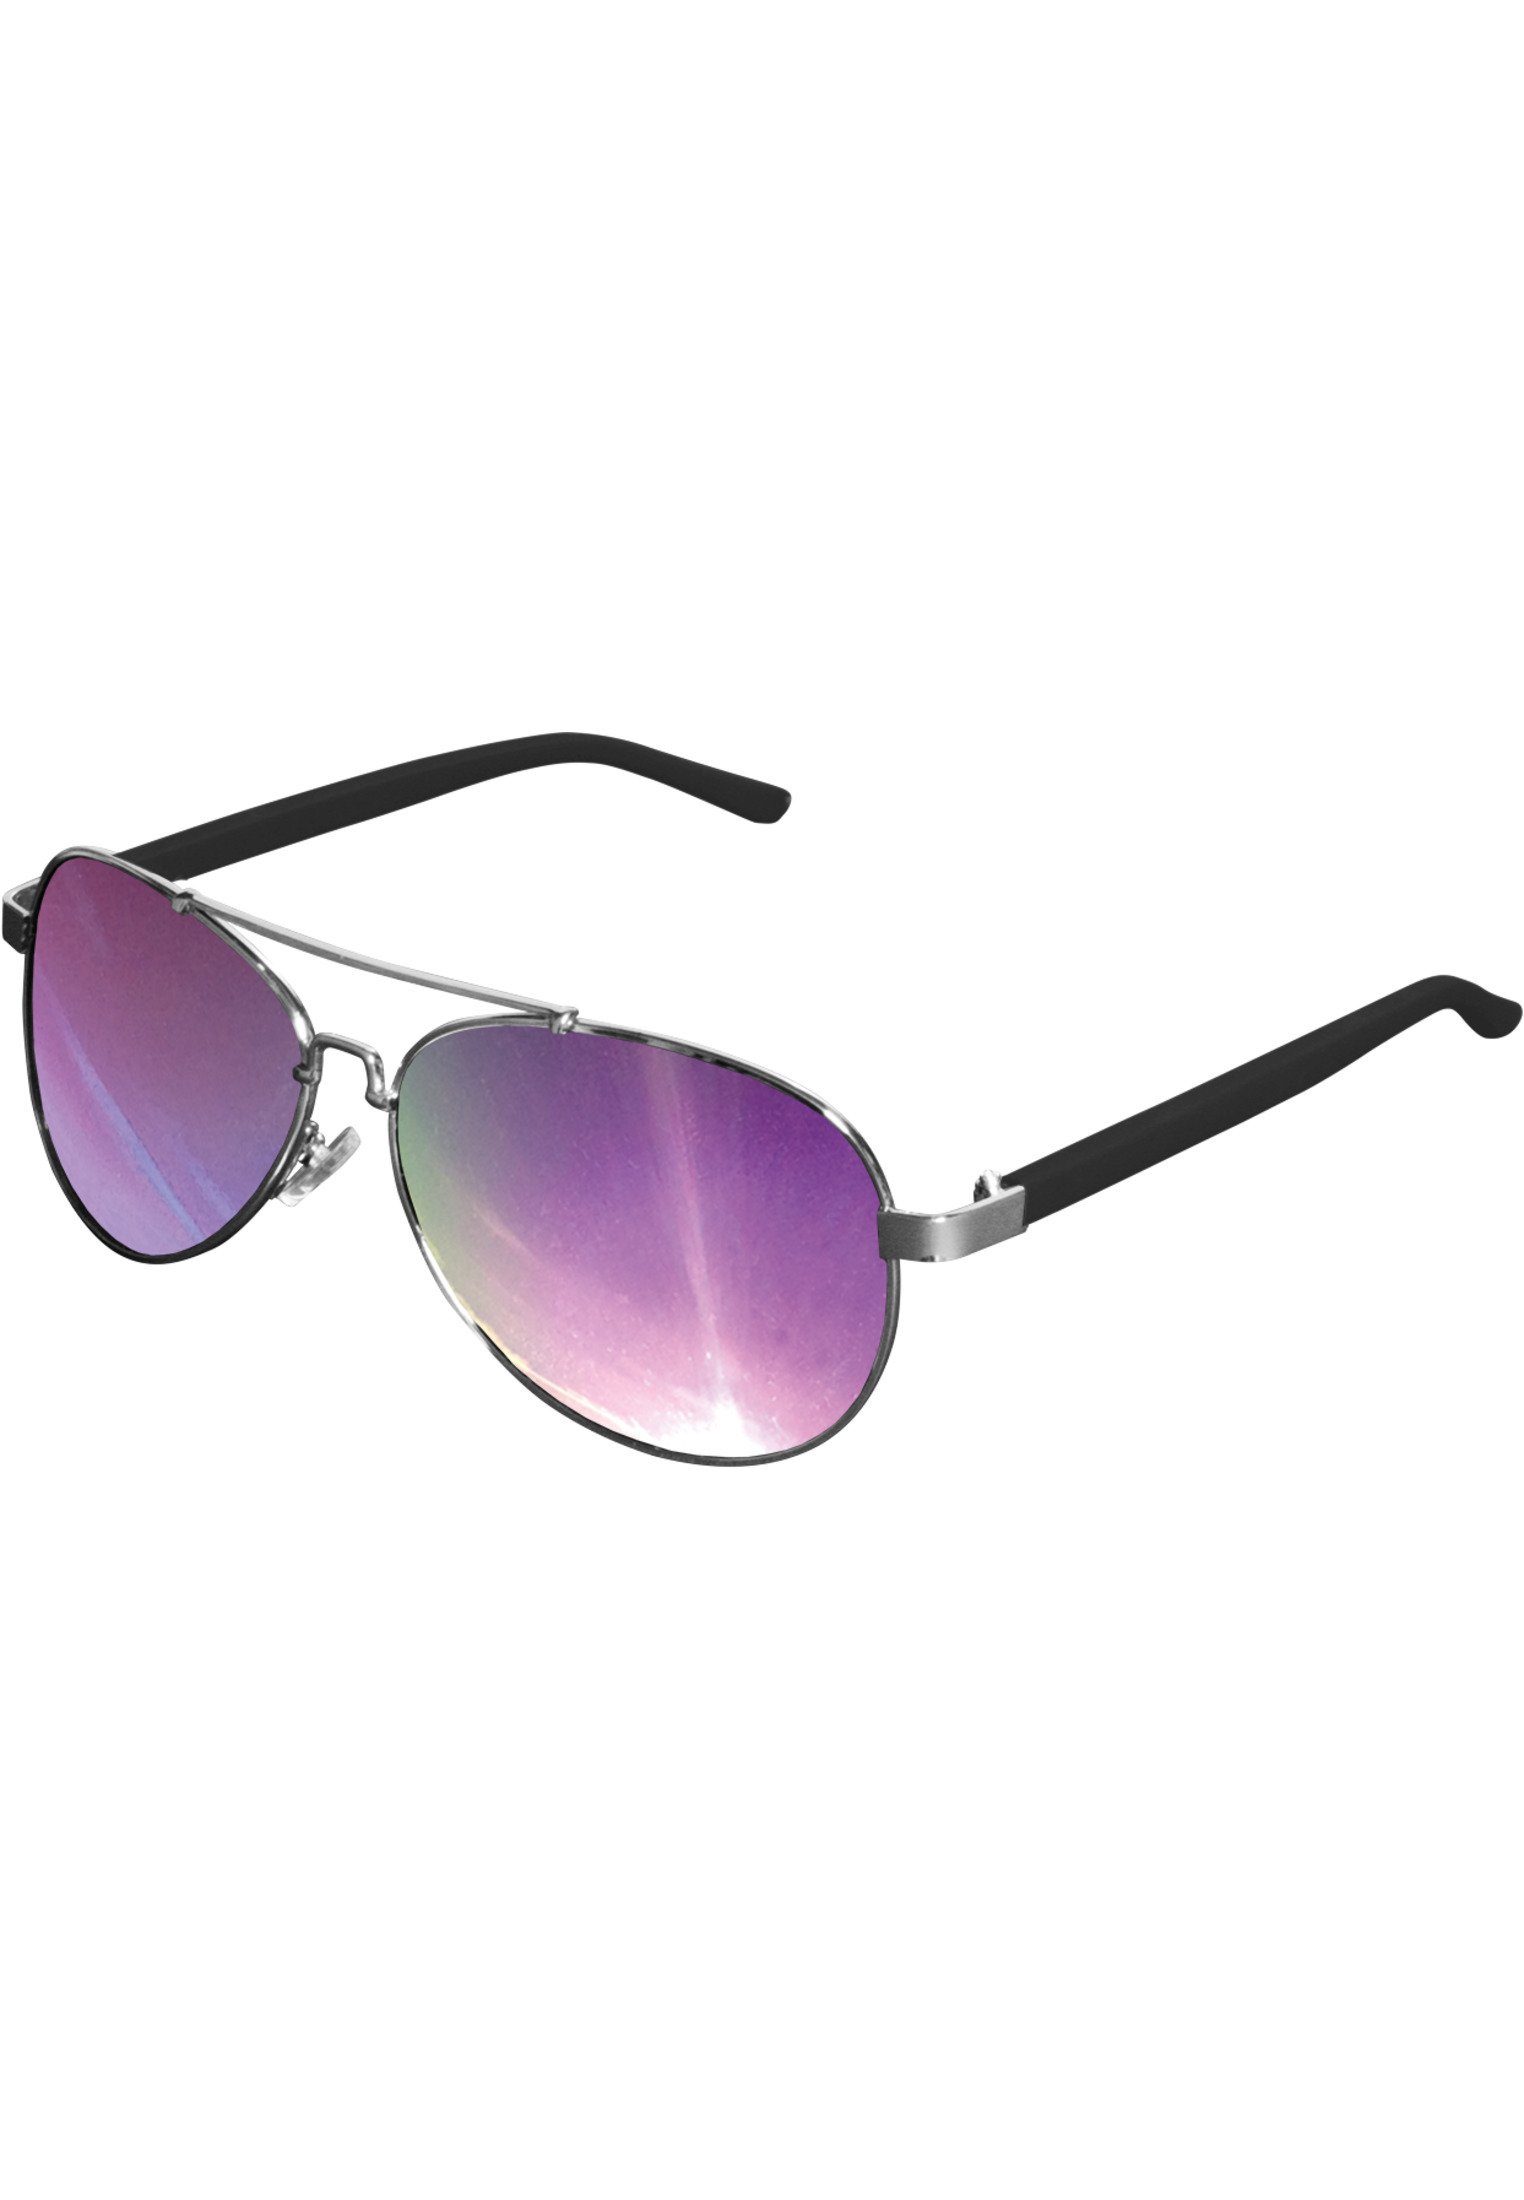 Großer Rabatt auf neue Produkte MSTRDS Sonnenbrille Accessoires Sunglasses Mumbo silver/purple Mirror